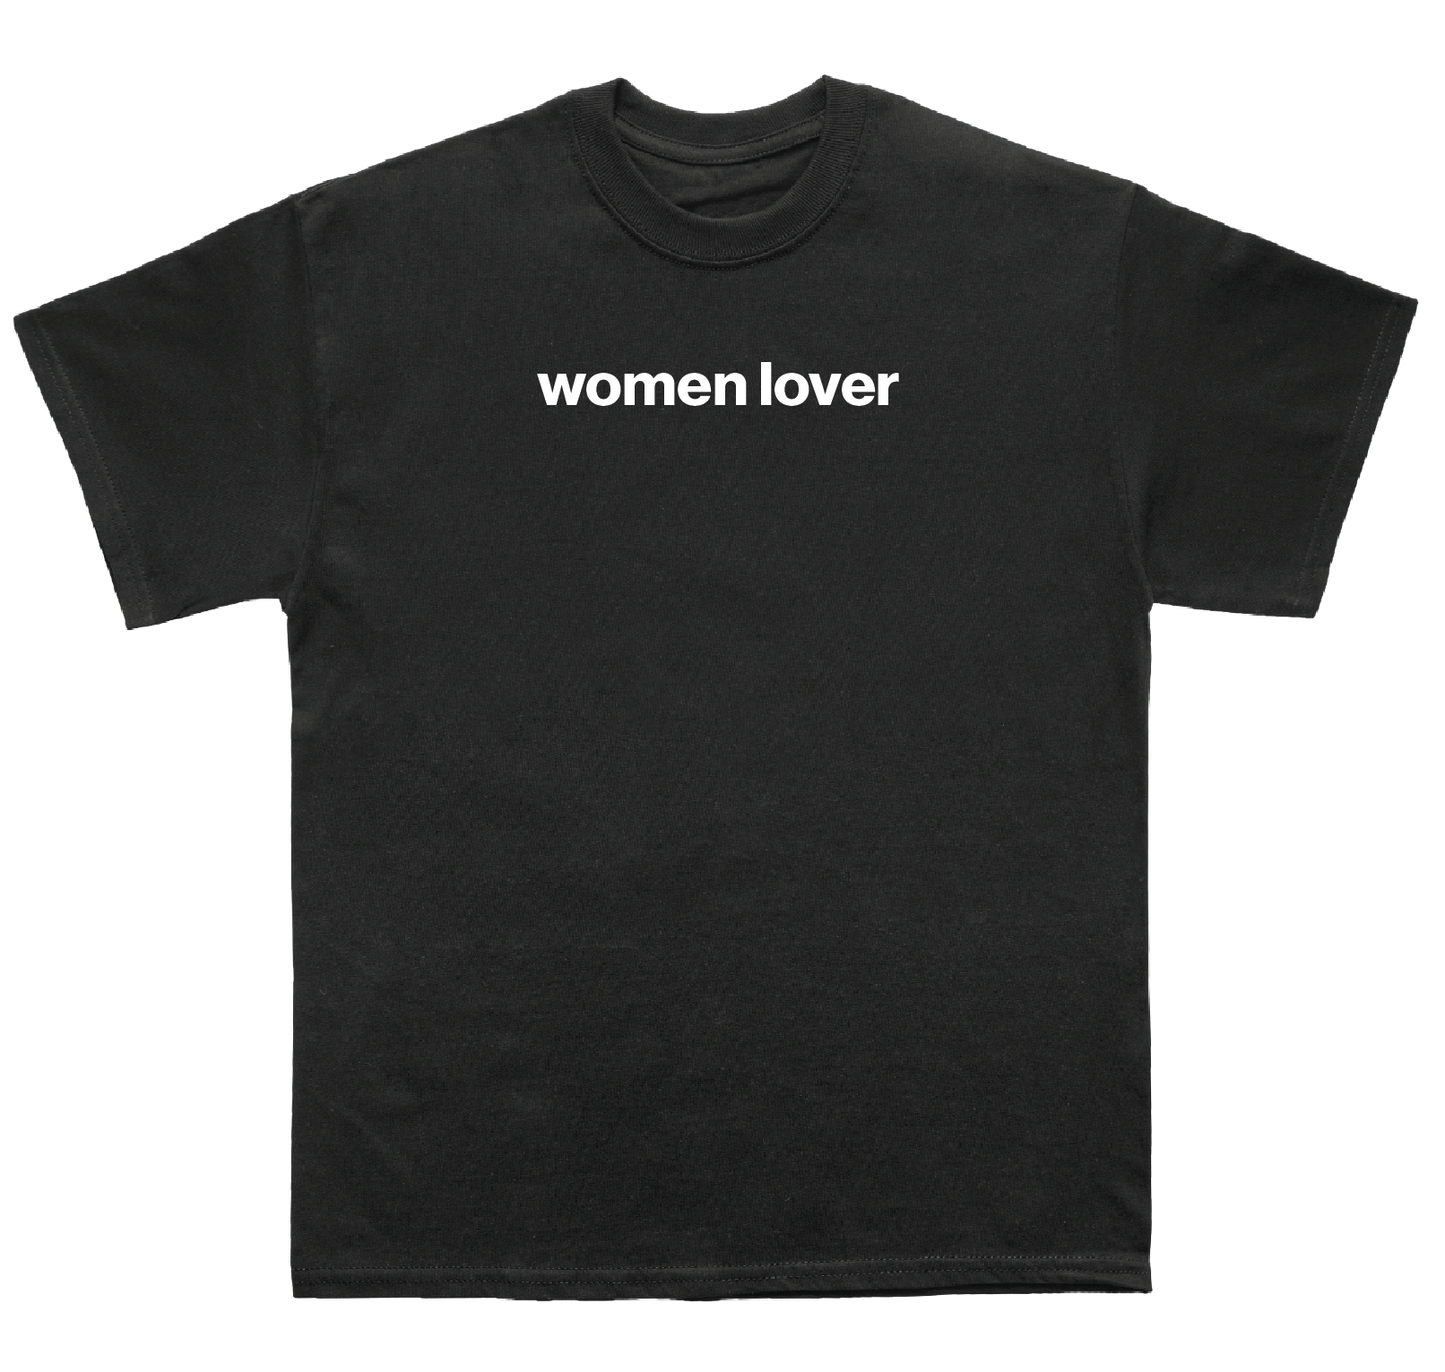 women lover shirt